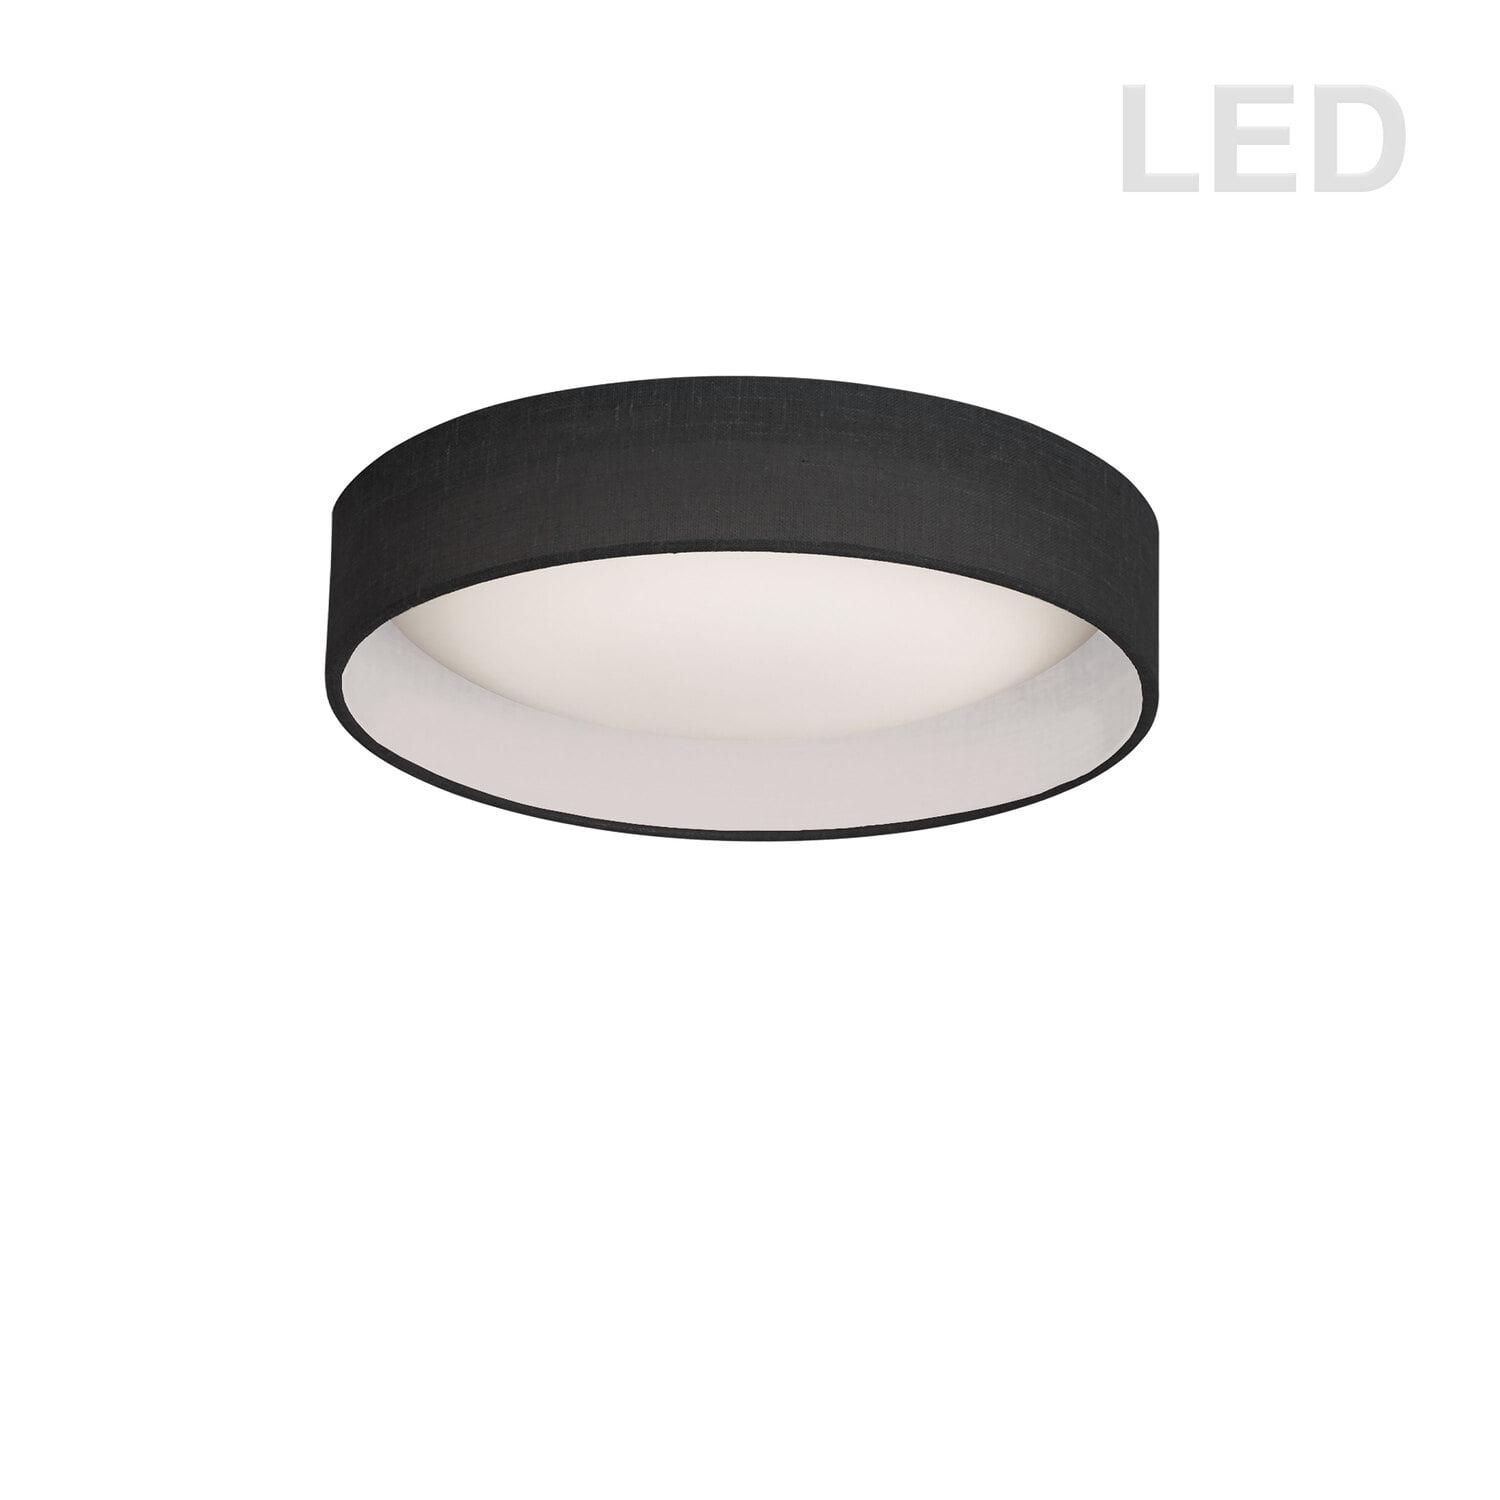 Sleek 11" Black and White LED Drum Flush Mount Light